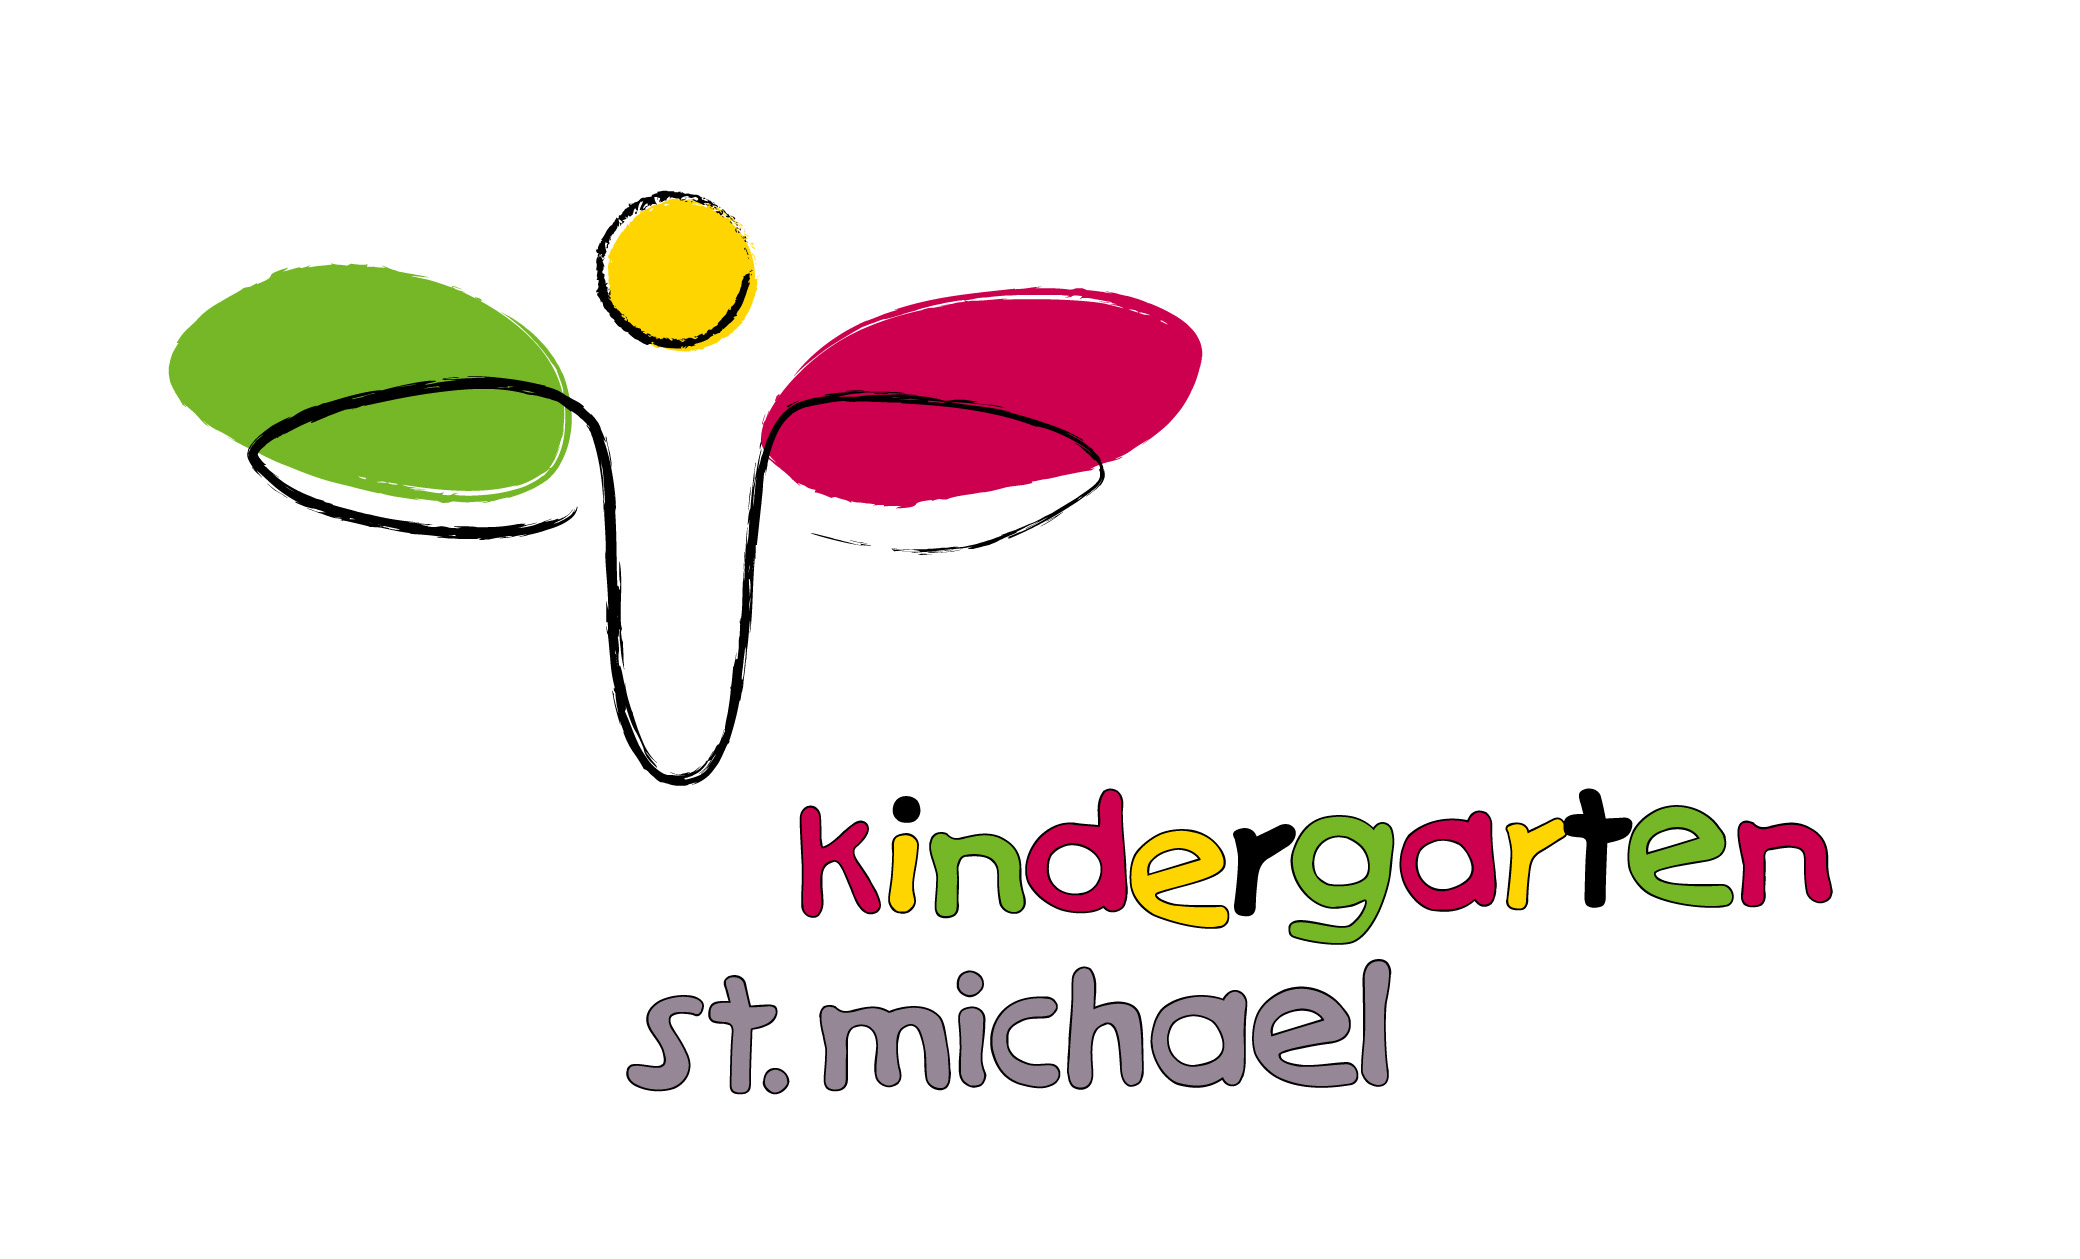 Michael-Kindergarten.jpg